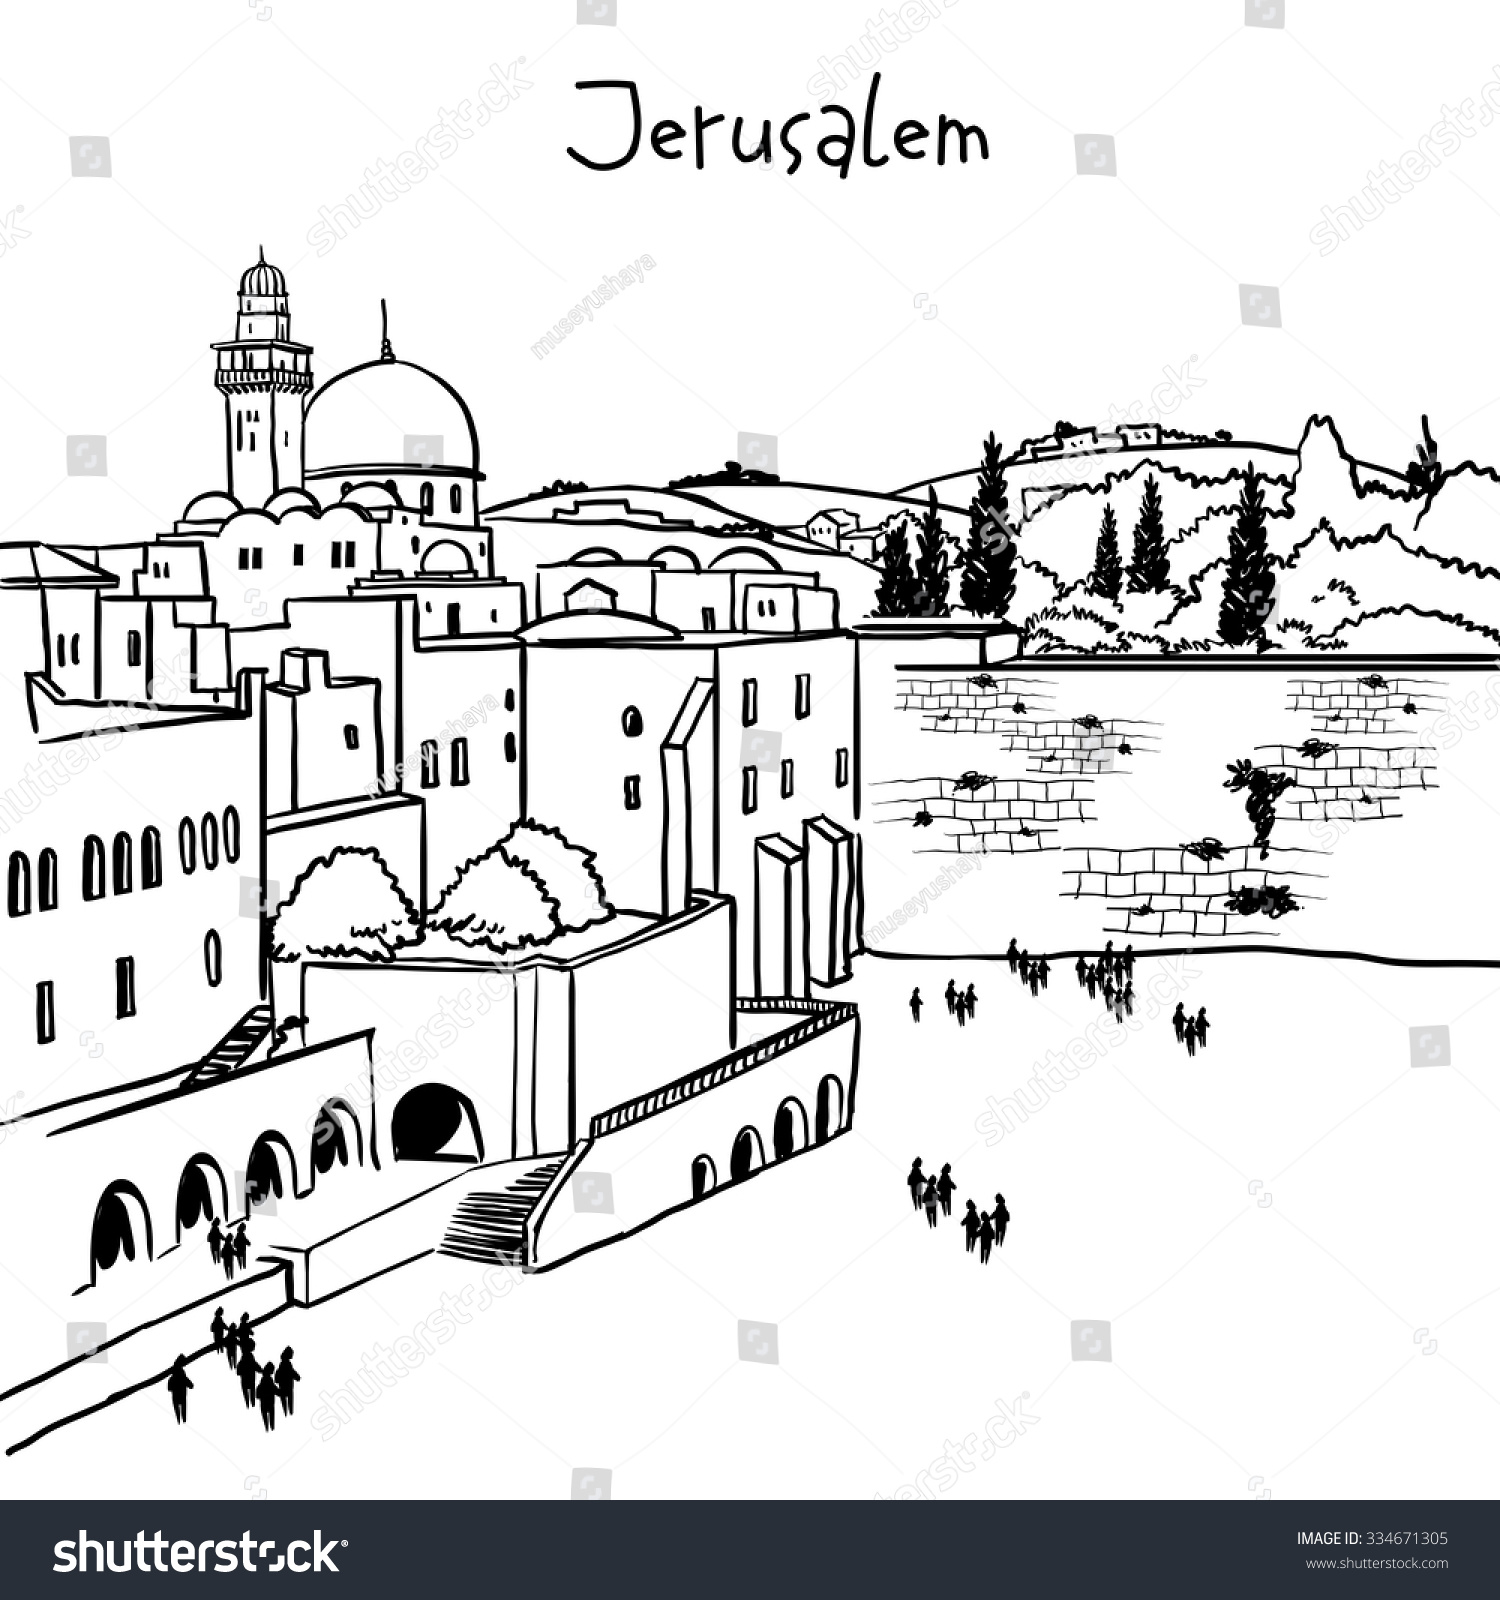 clipart city of jerusalem - photo #10